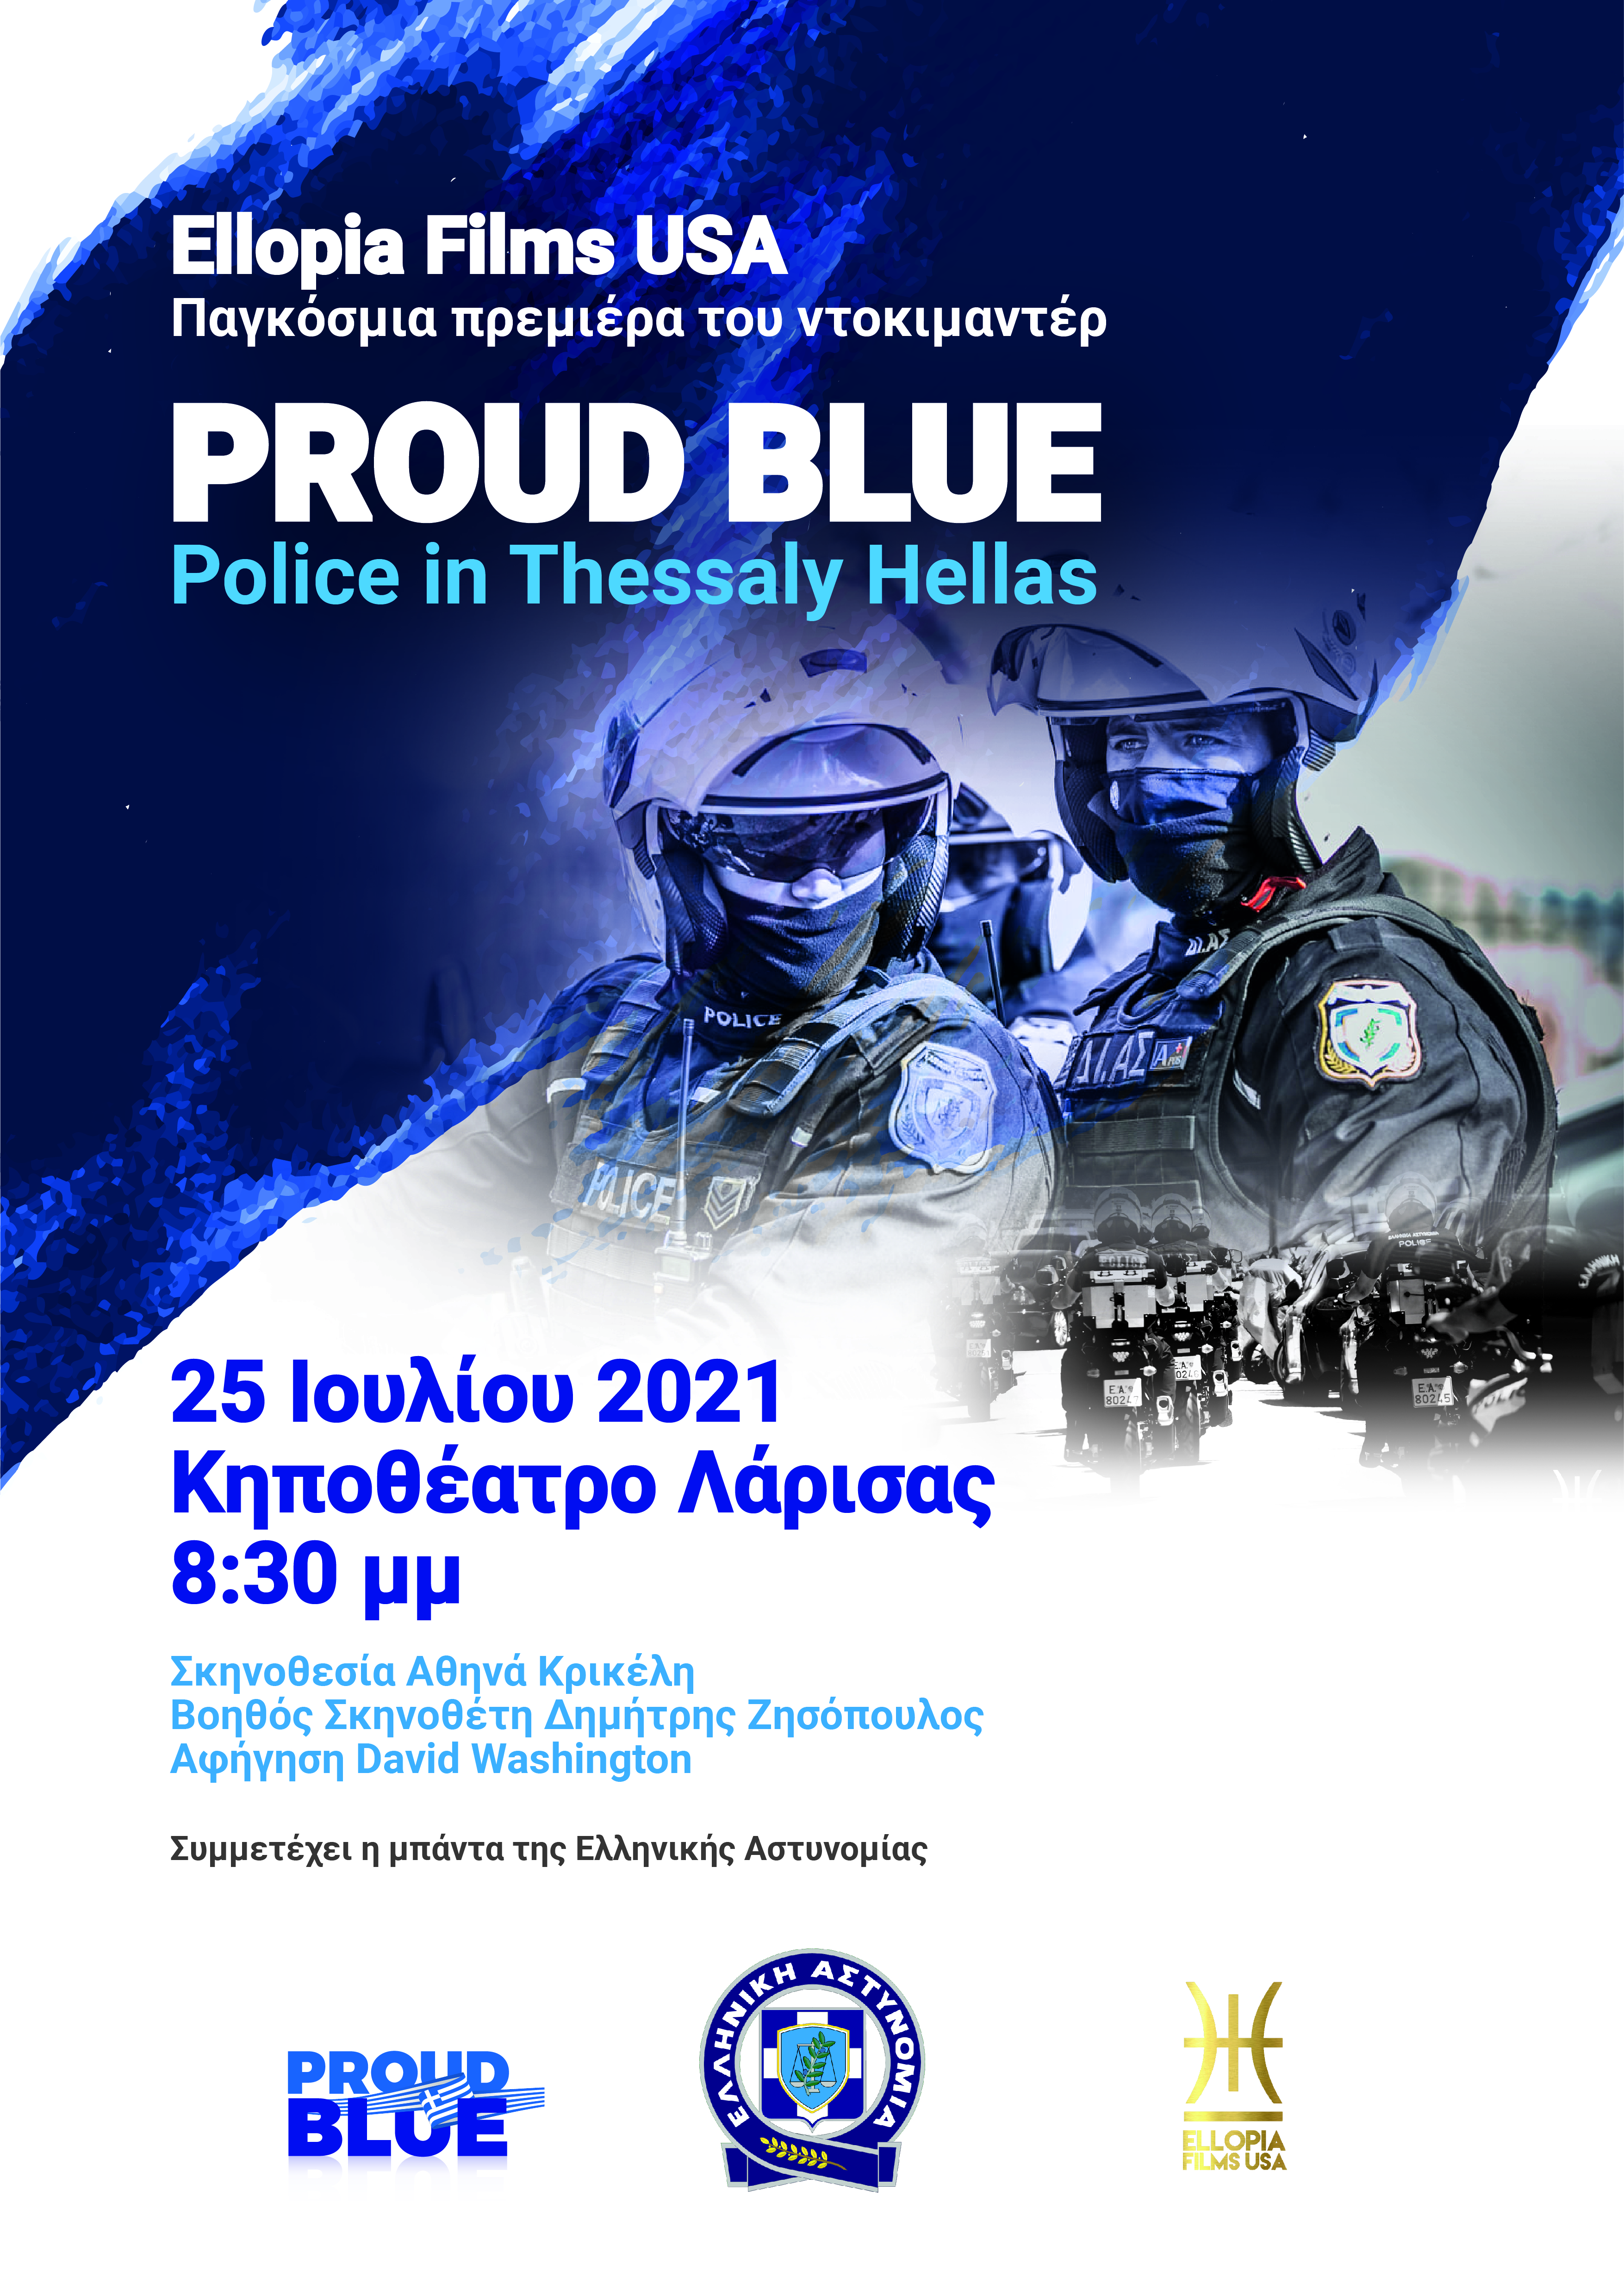 Ντοκιμαντέρ - αφιέρωμα σε αστυνομικούς που υπηρετούν σε υπηρεσίες της Θεσσαλίας 